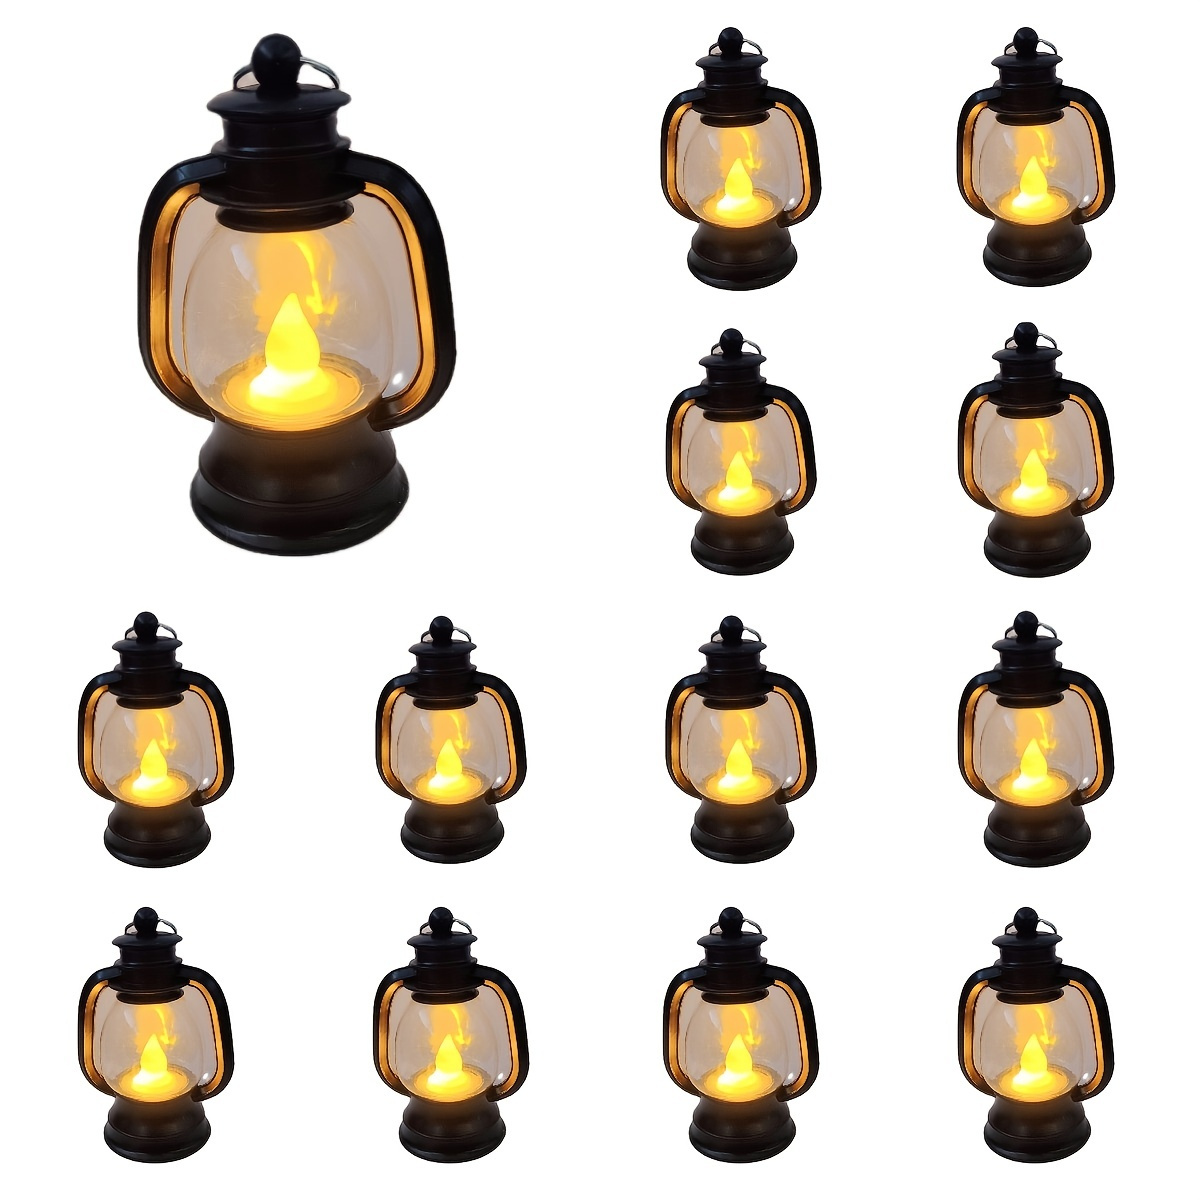 Decoration Wholesale Mini LED Flashing Hanging Lantern Battery